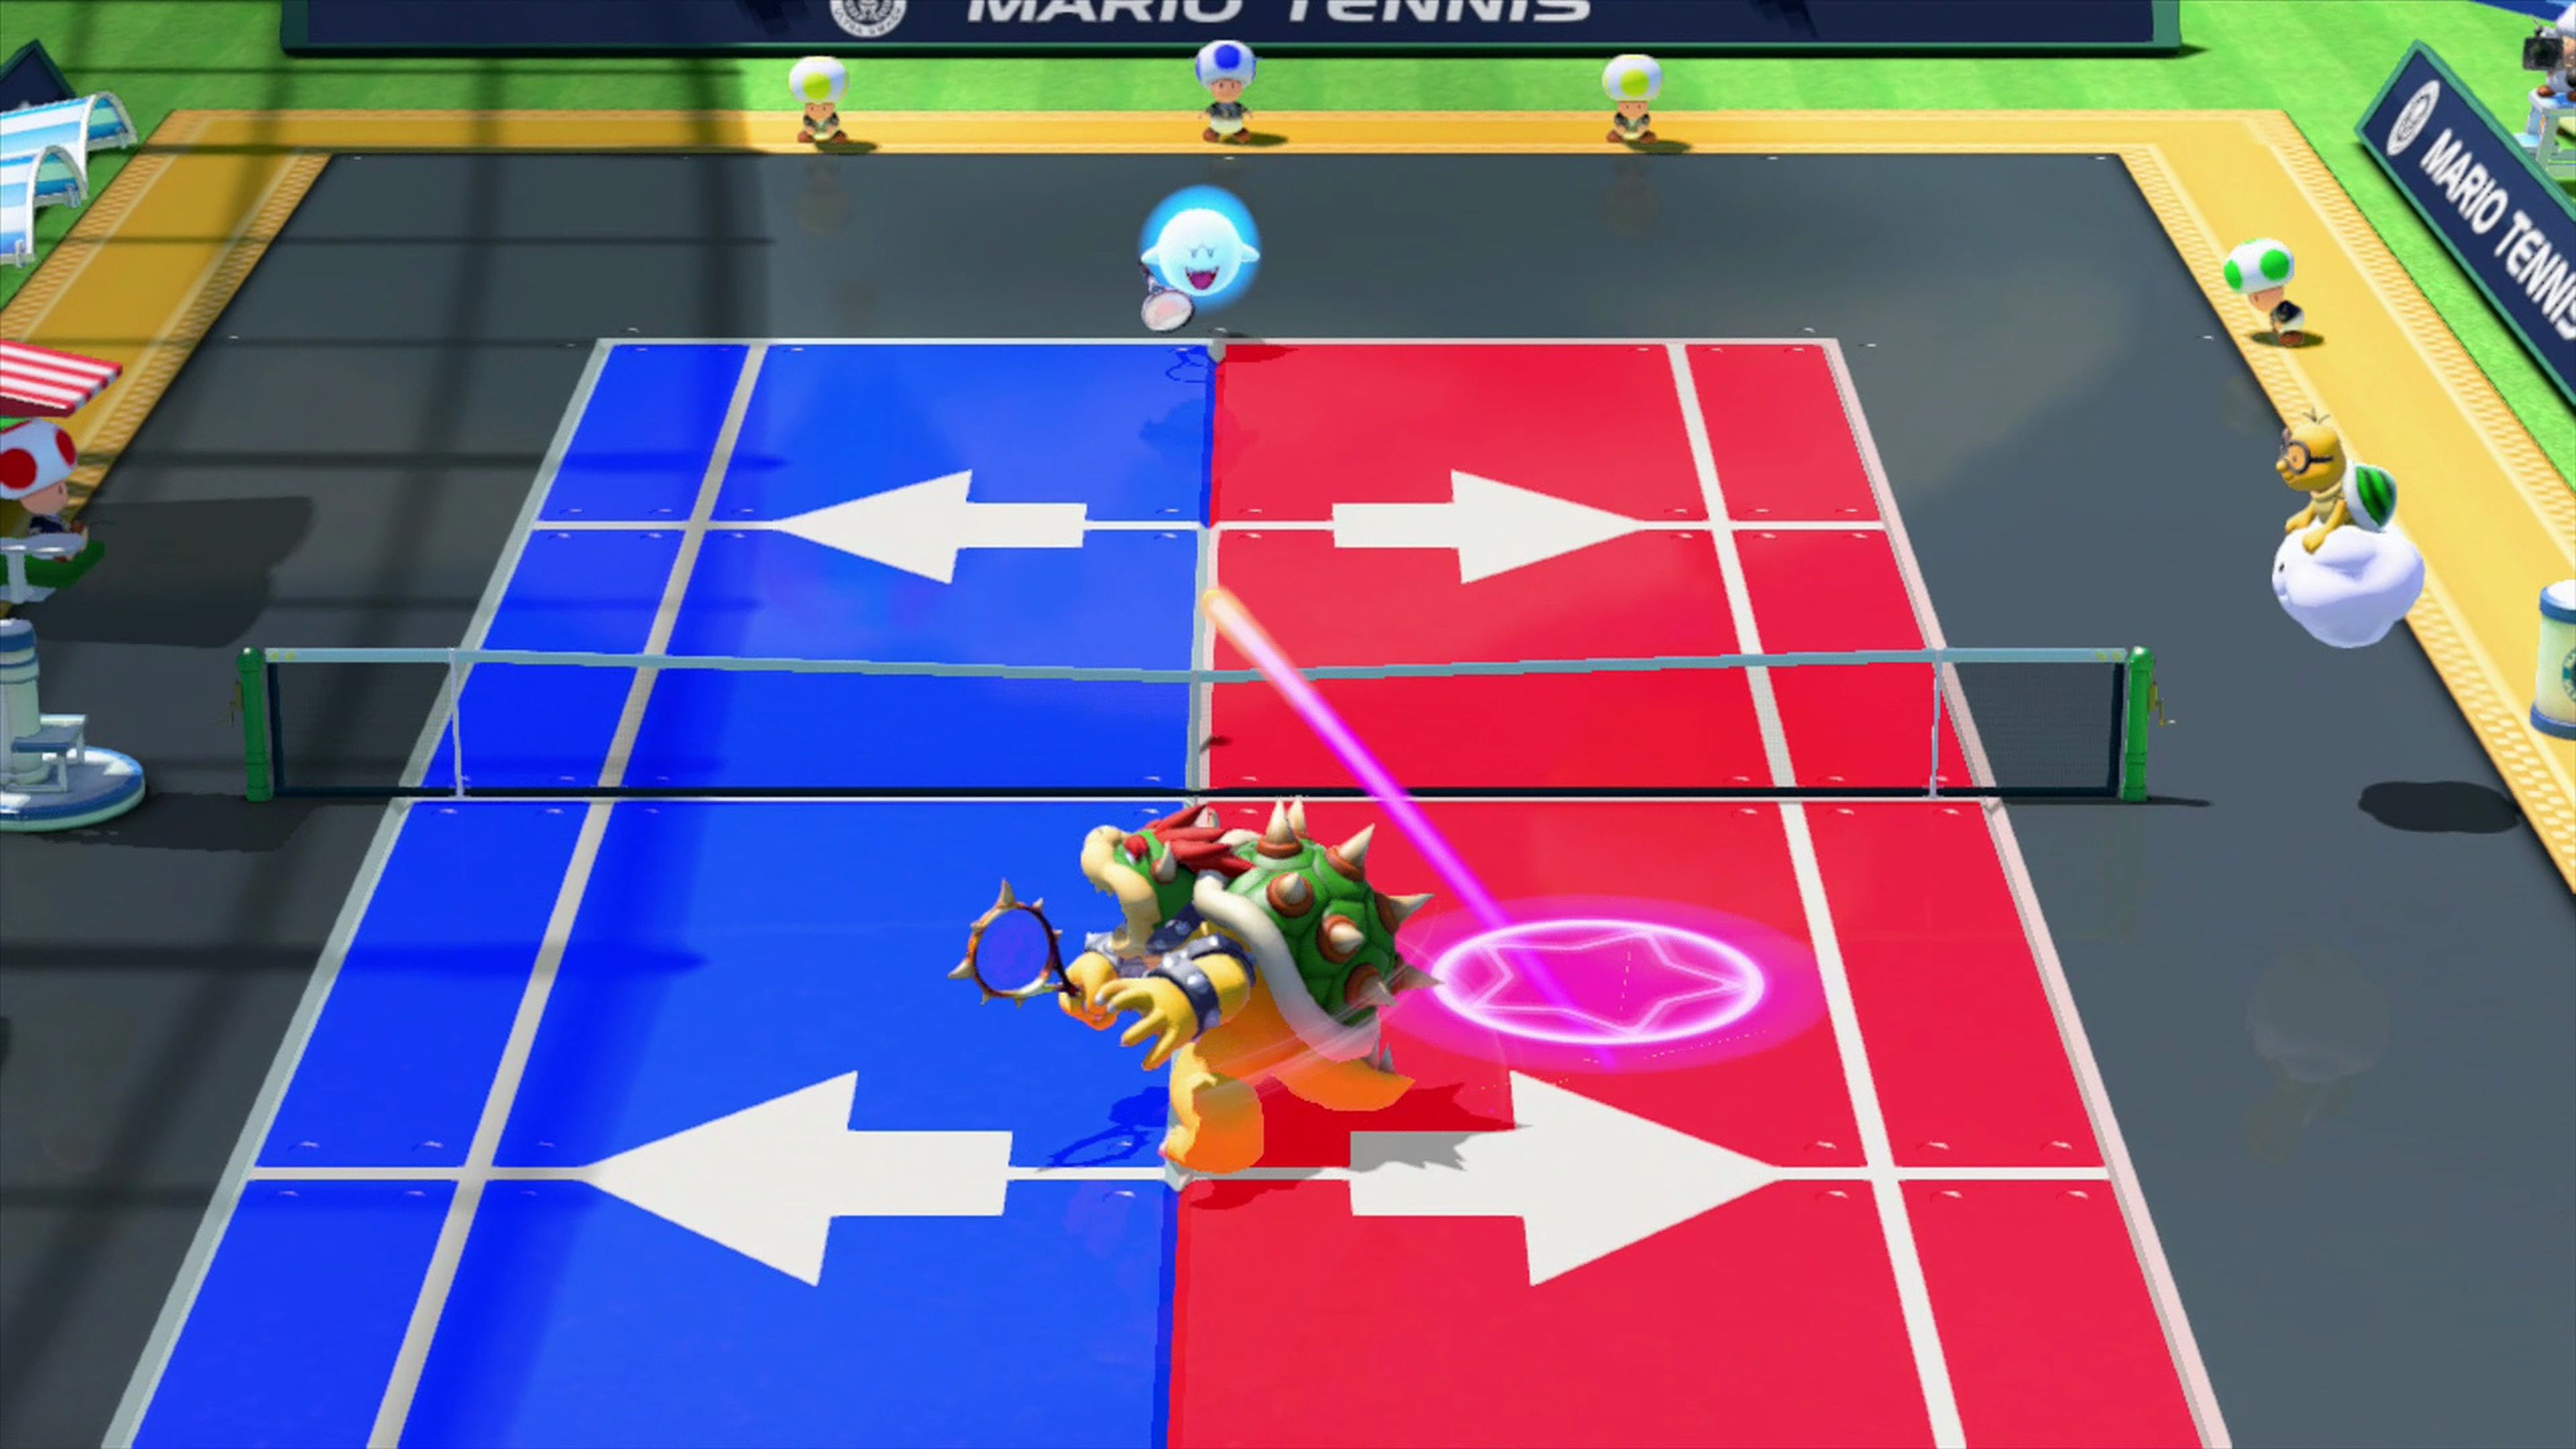 Análisis de Mario Tennis: Ultra Smash para Wii U